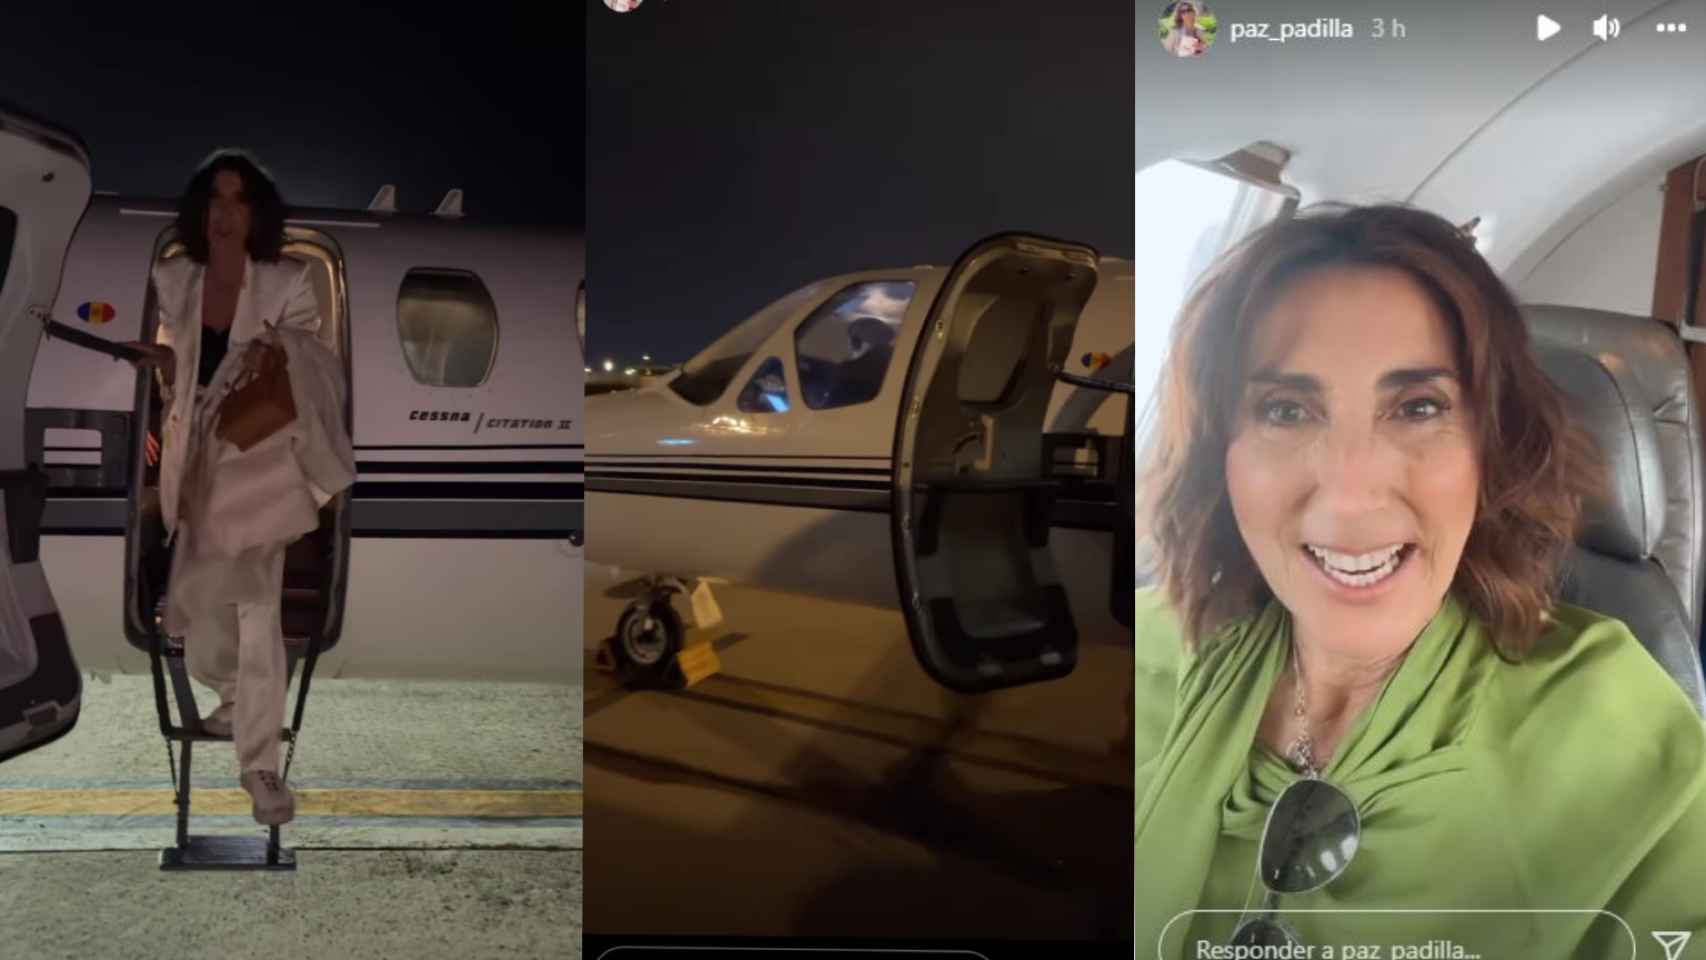 Paz Padilla ha narrado a través de Instagram su experiencia a bordo del jet privado.